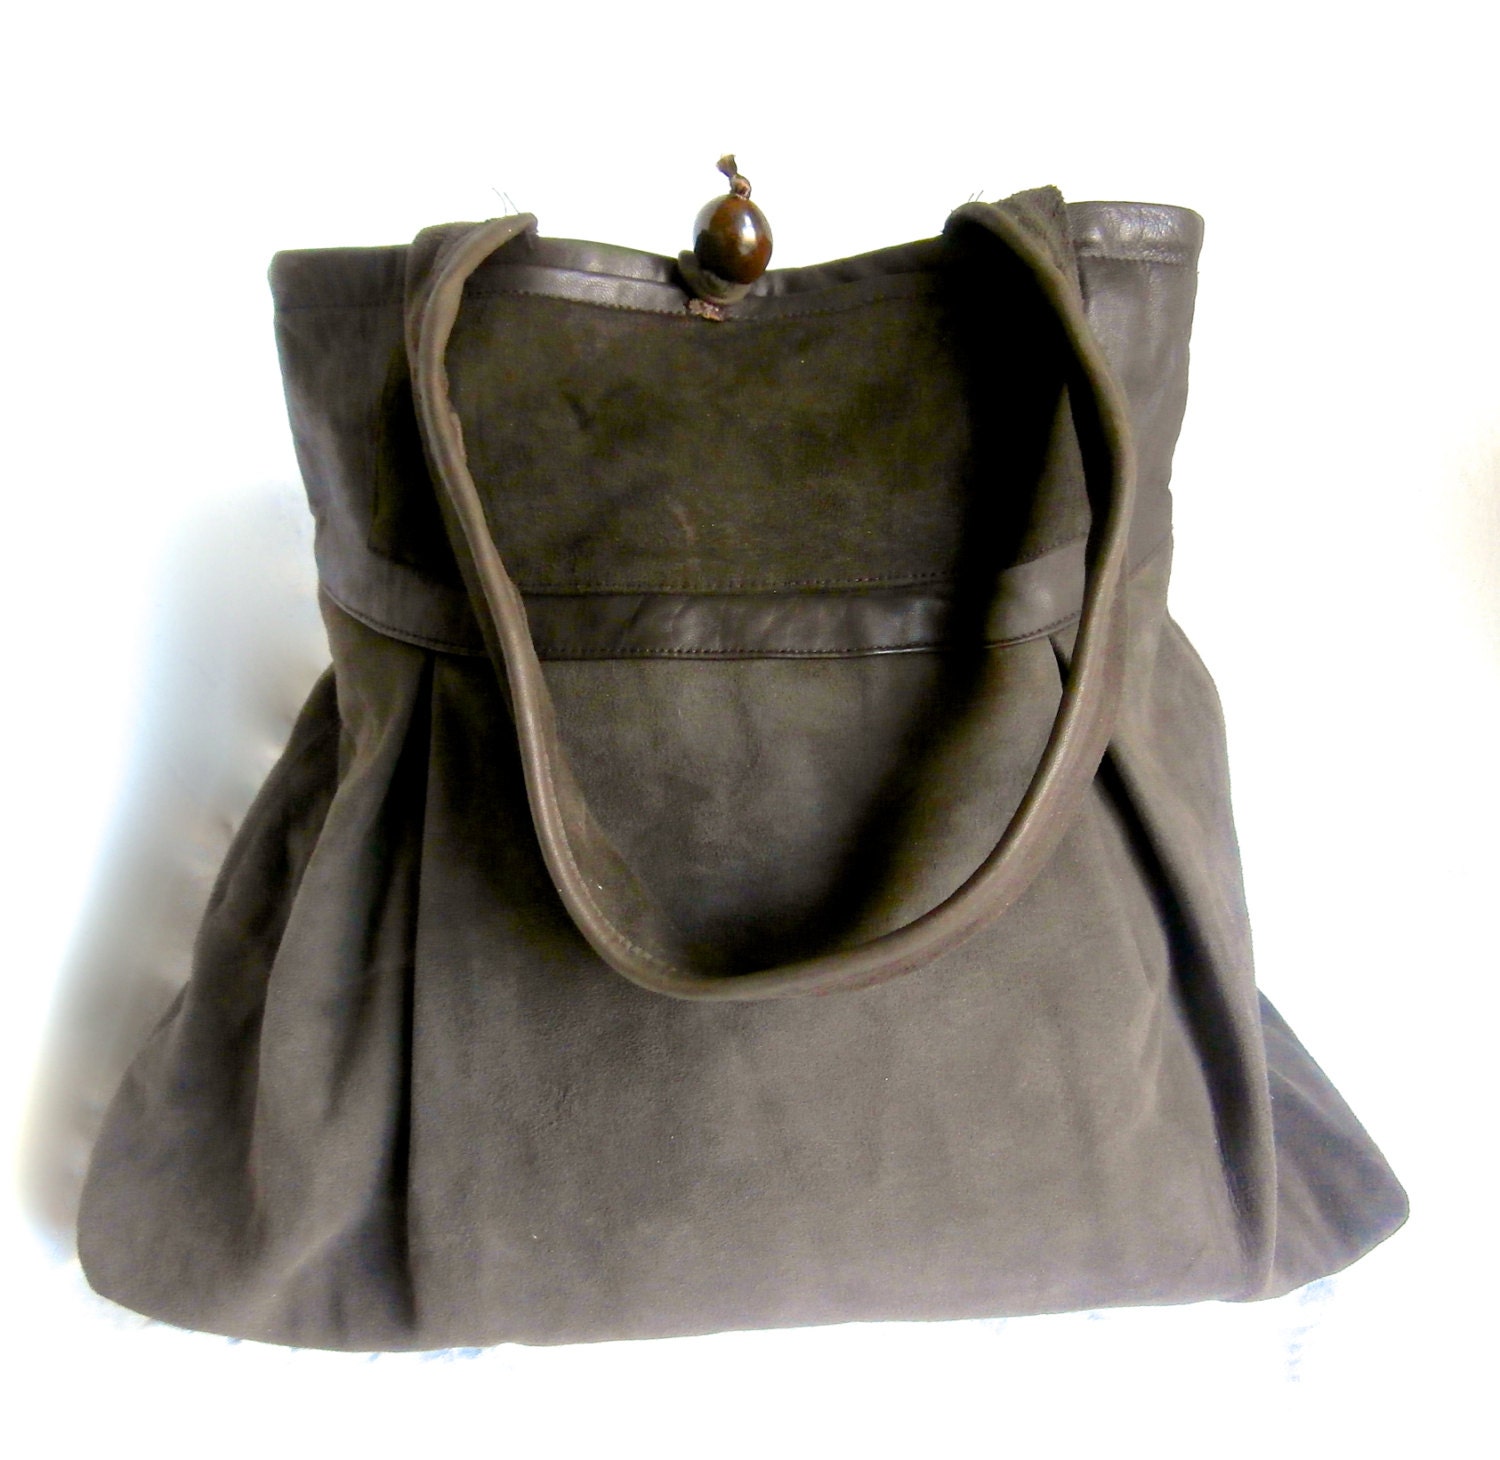 Pleated Suede Bag Handmade Repurposed